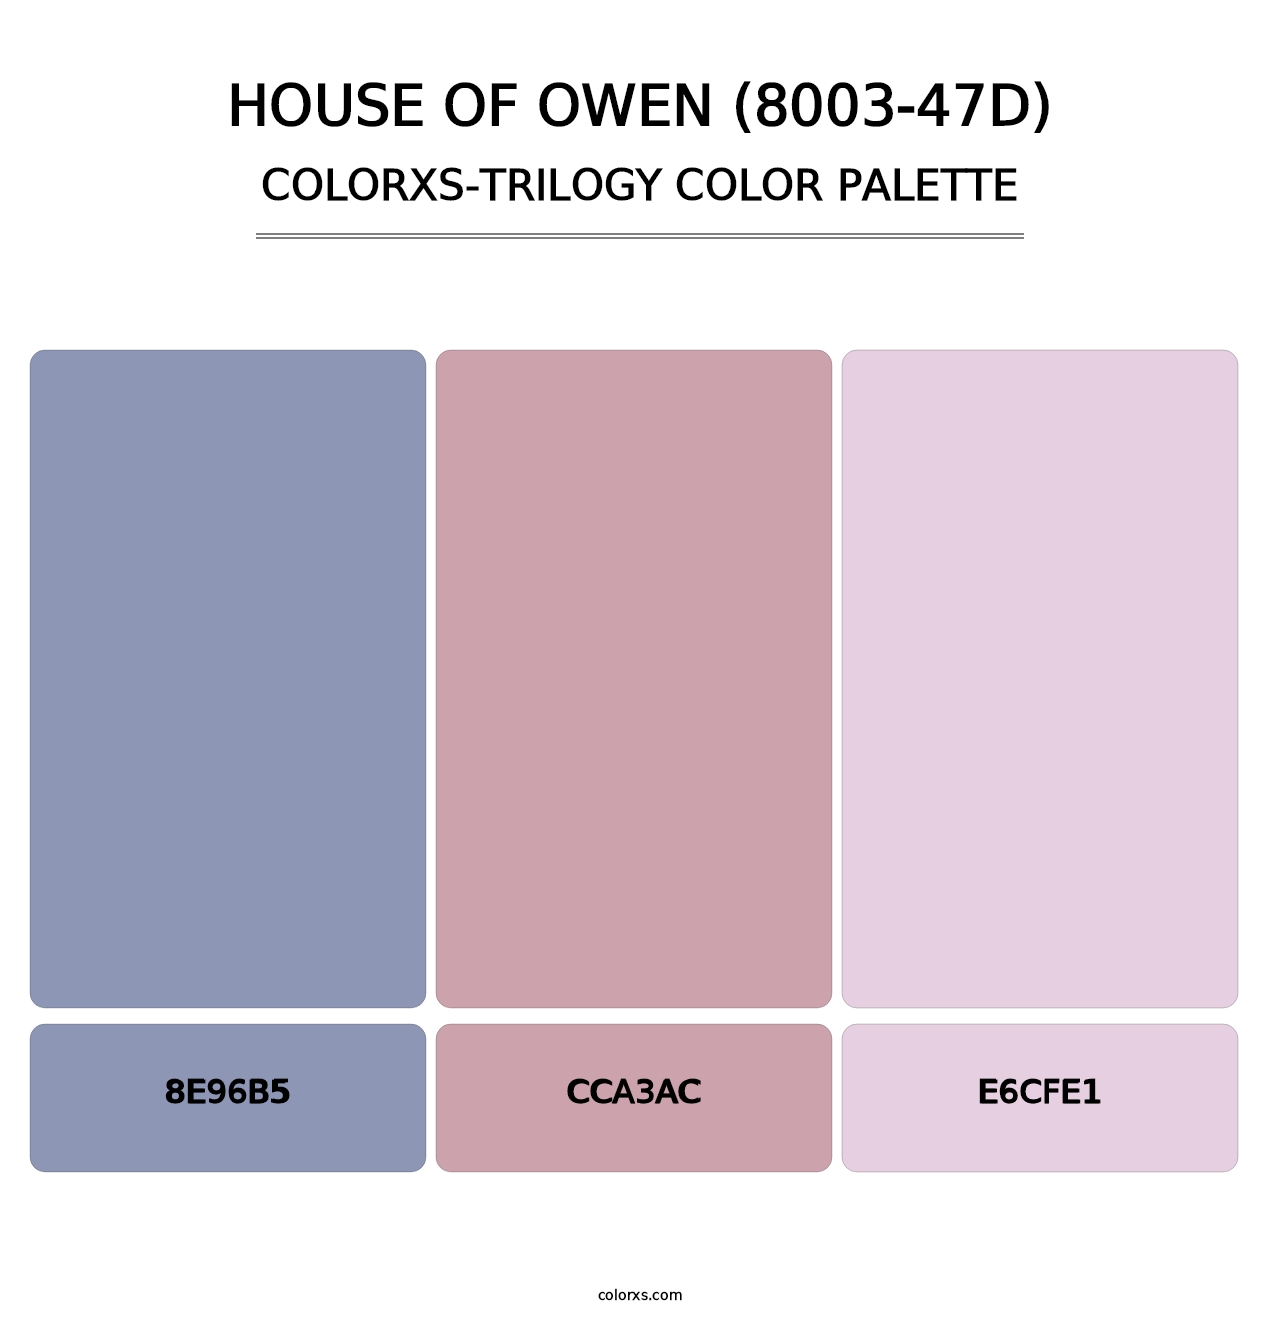 House of Owen (8003-47D) - Colorxs Trilogy Palette